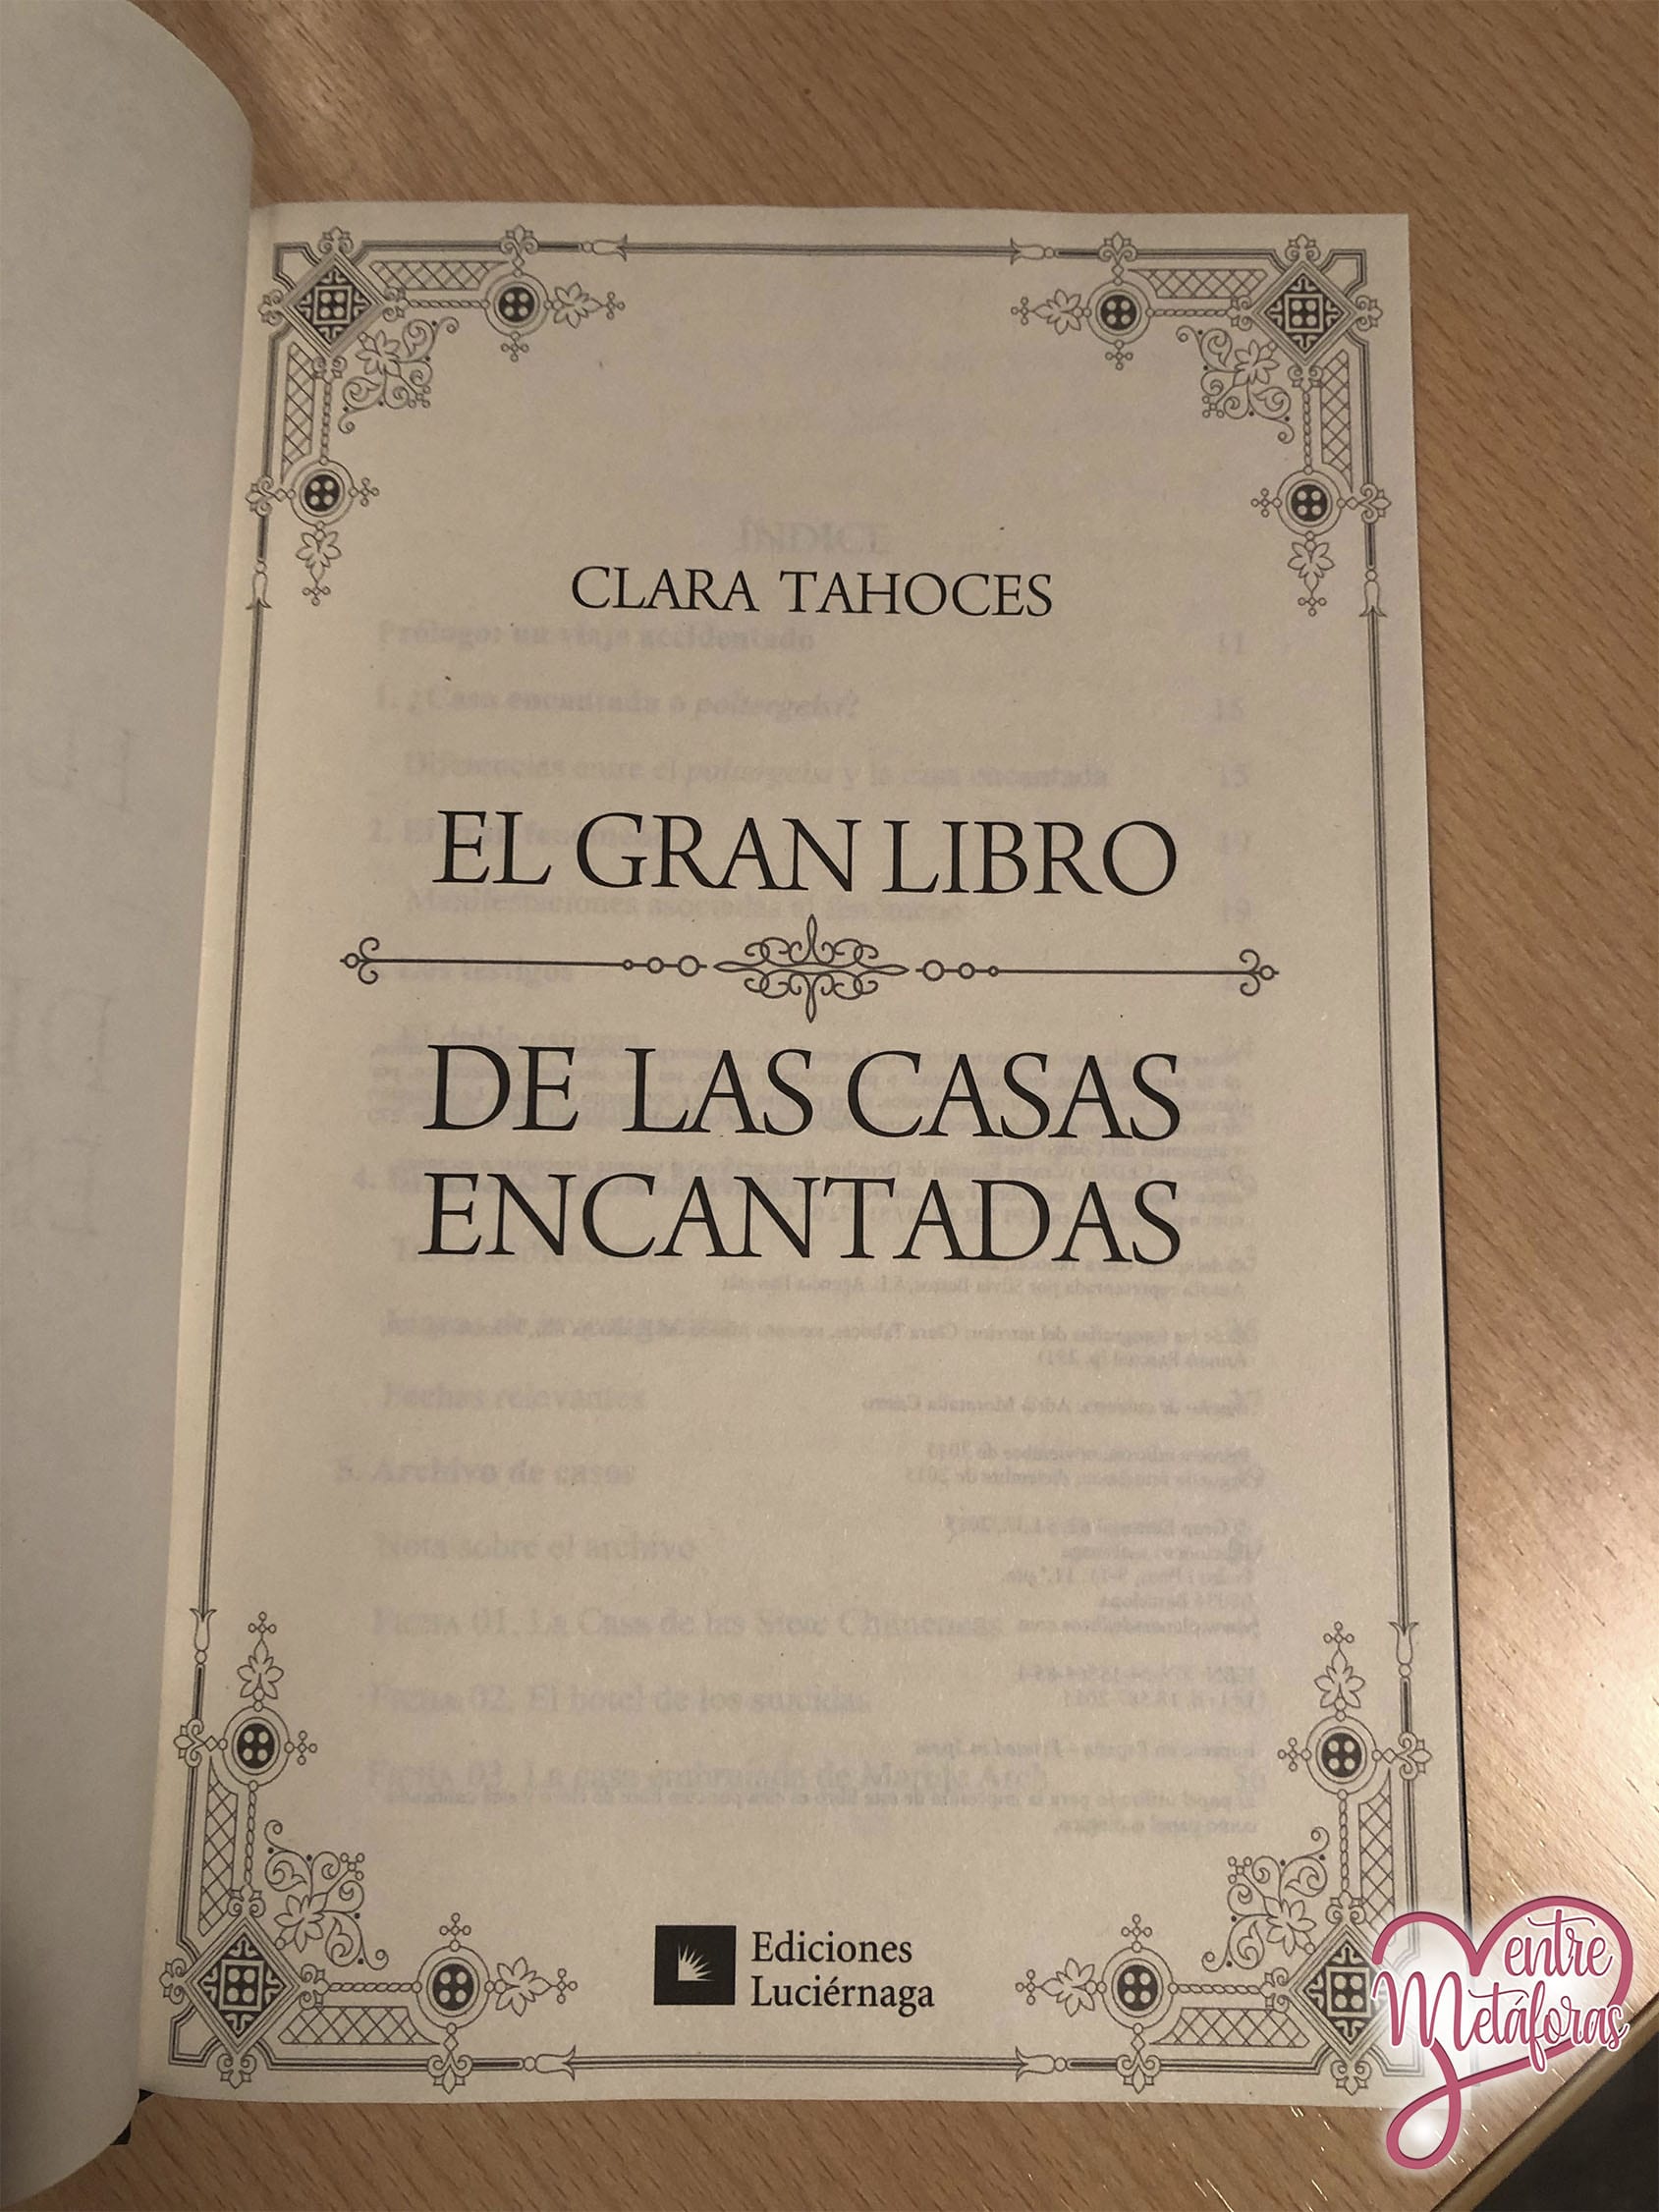 El gran libro de las casas encantadas, de Clara Tahoces - Reseña